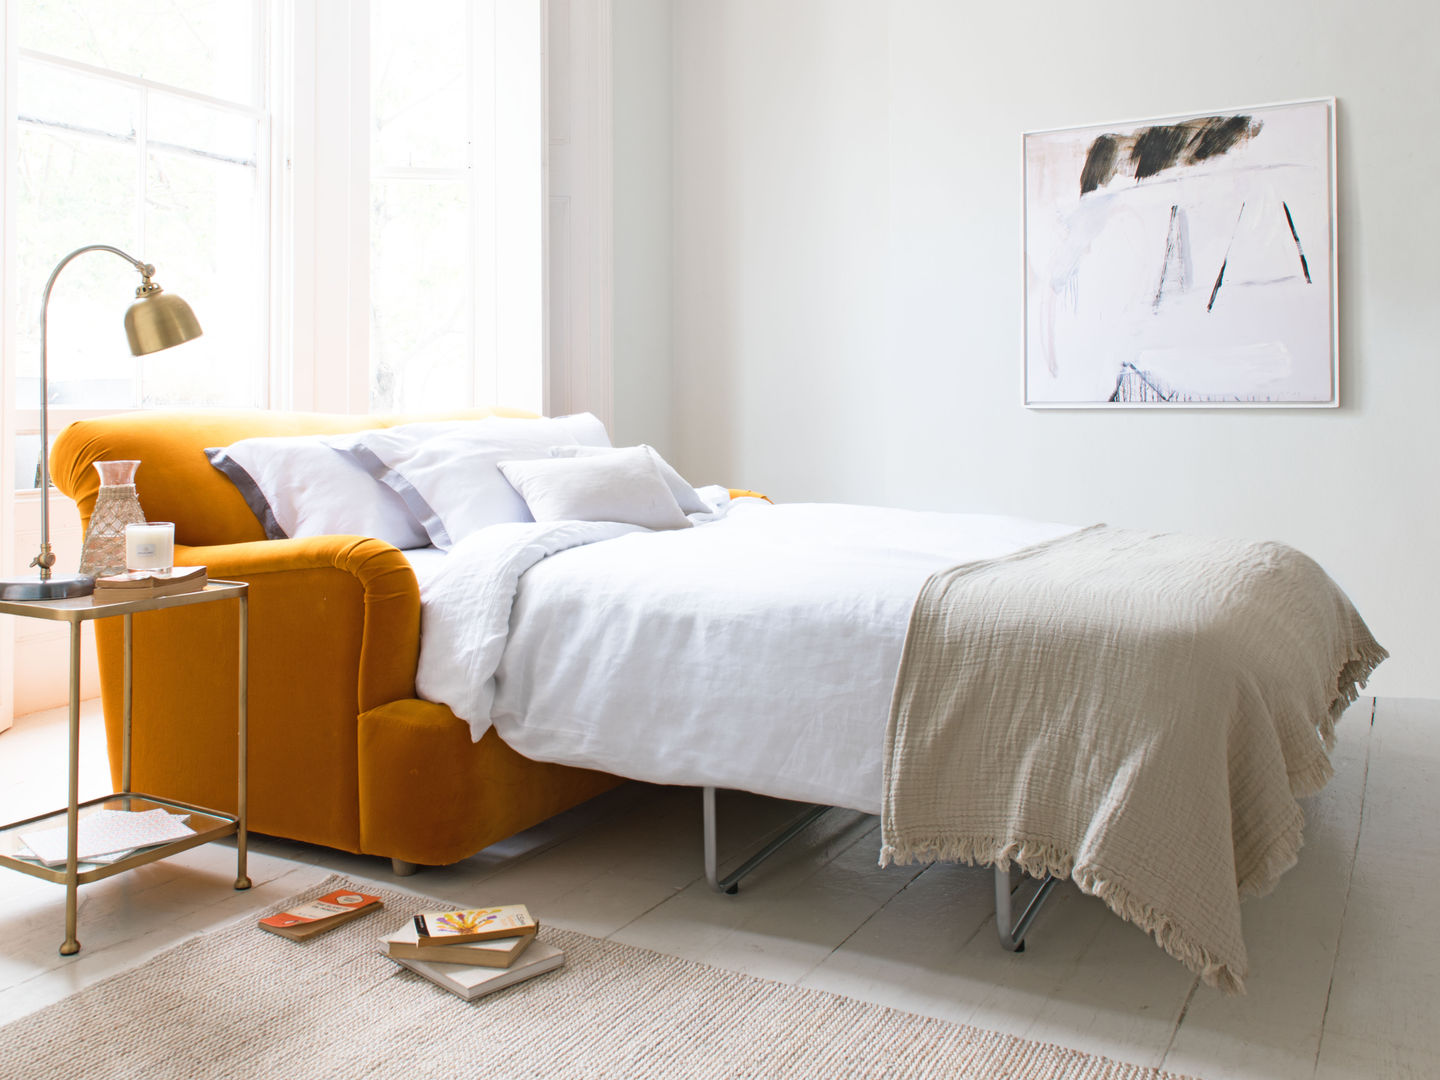 Pudding sofa bed Loaf Salones de estilo moderno sofa bed,sofa,bed,new,orange,guest-bed